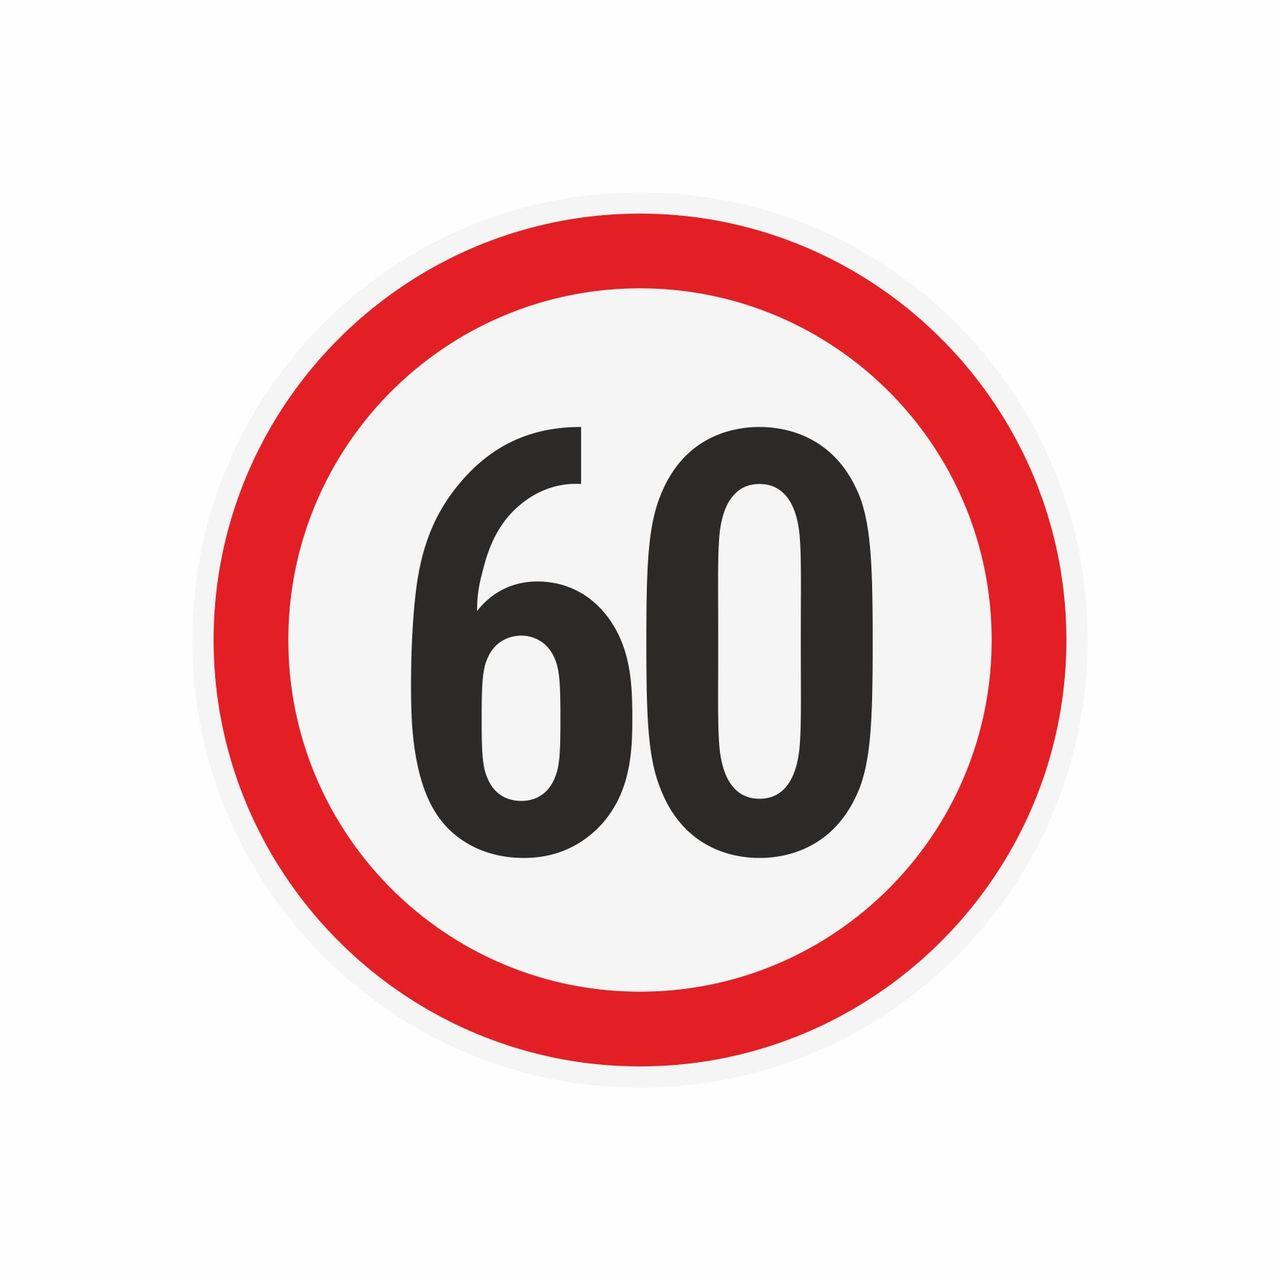 Наклейка ограничения скорости "60" для автотранспорта, 210х210 мм